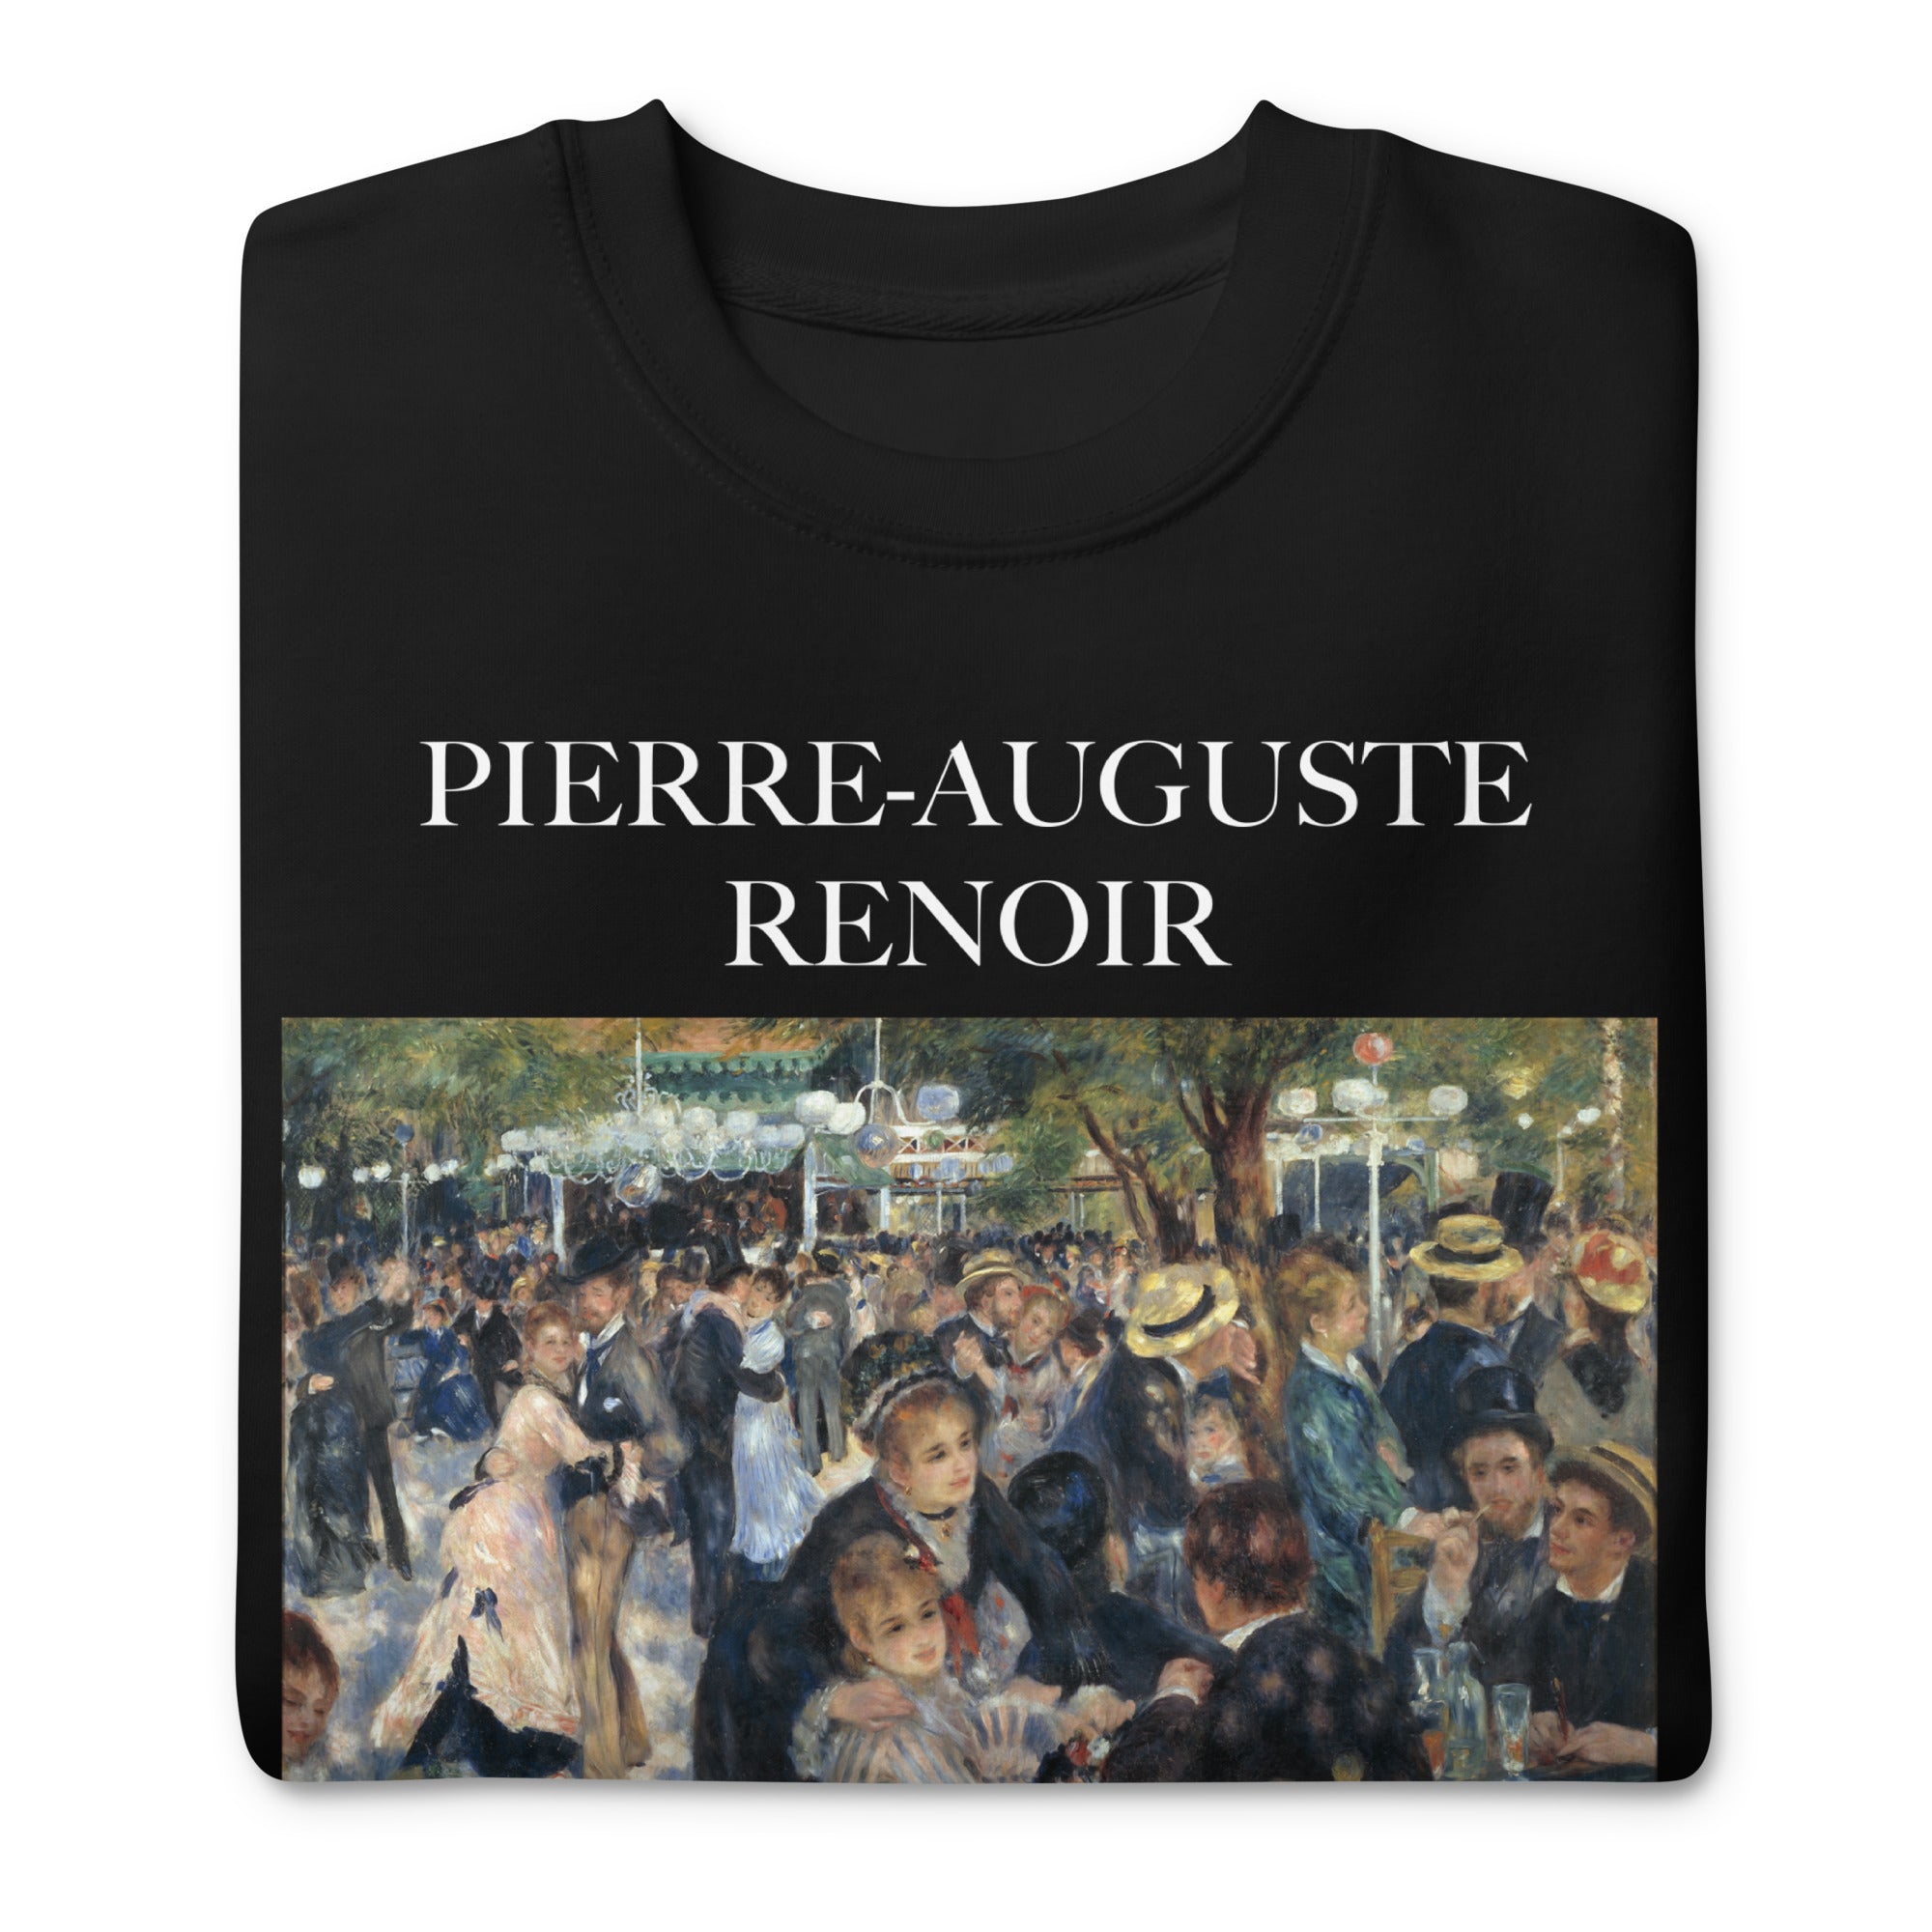 Pierre-Auguste Renoir 'Dance at Le Moulin de la Galette' Famous Painting Sweatshirt | Unisex Premium Sweatshirt